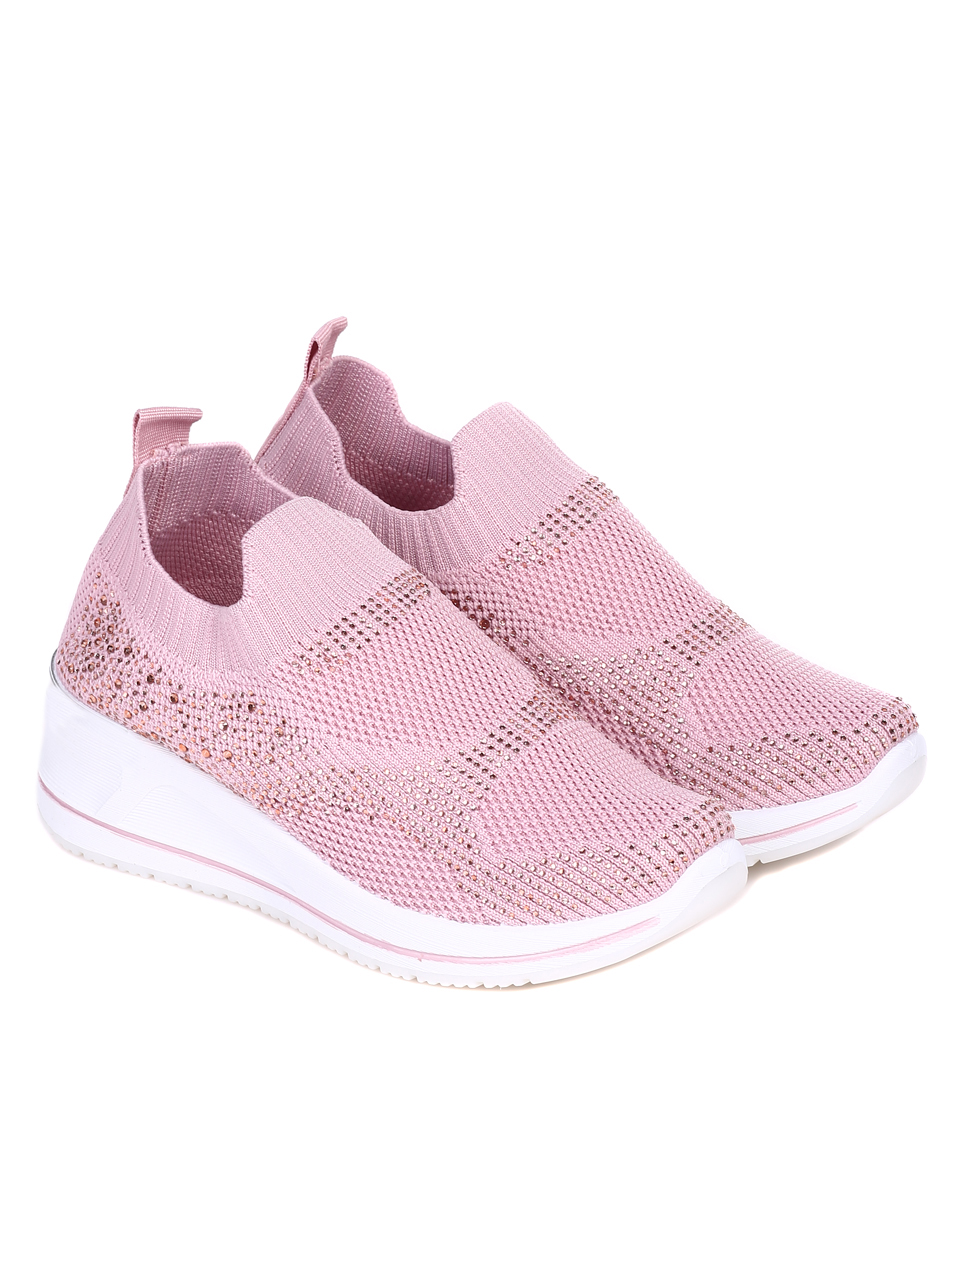 Ежедневни дамски обувки с декоративни камъни в розово 3U-22051 pink